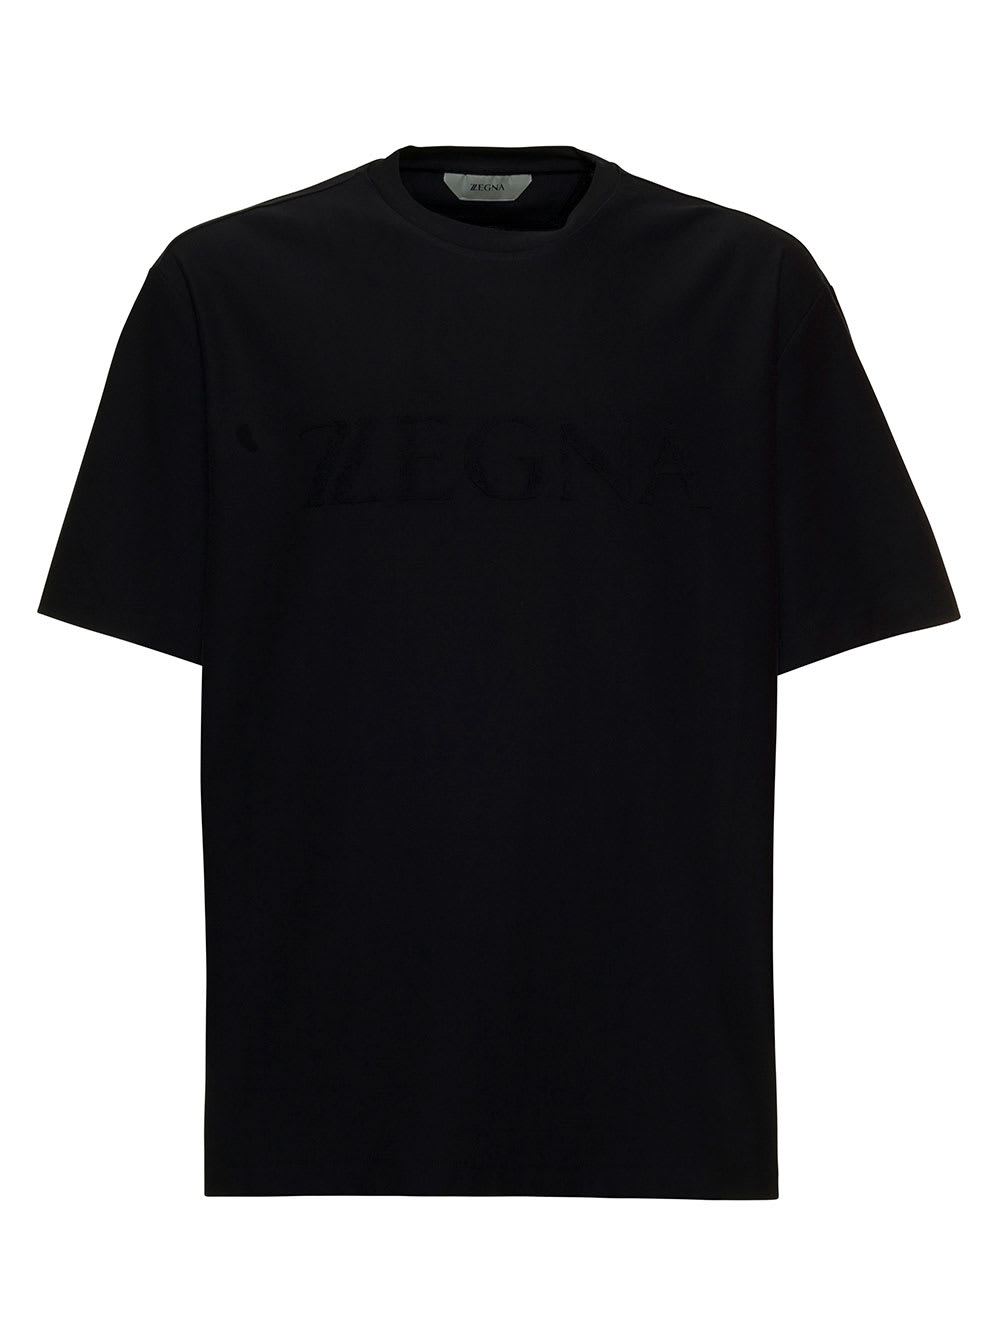 Z Zegna Black Cotton Crew Neck T-shirt